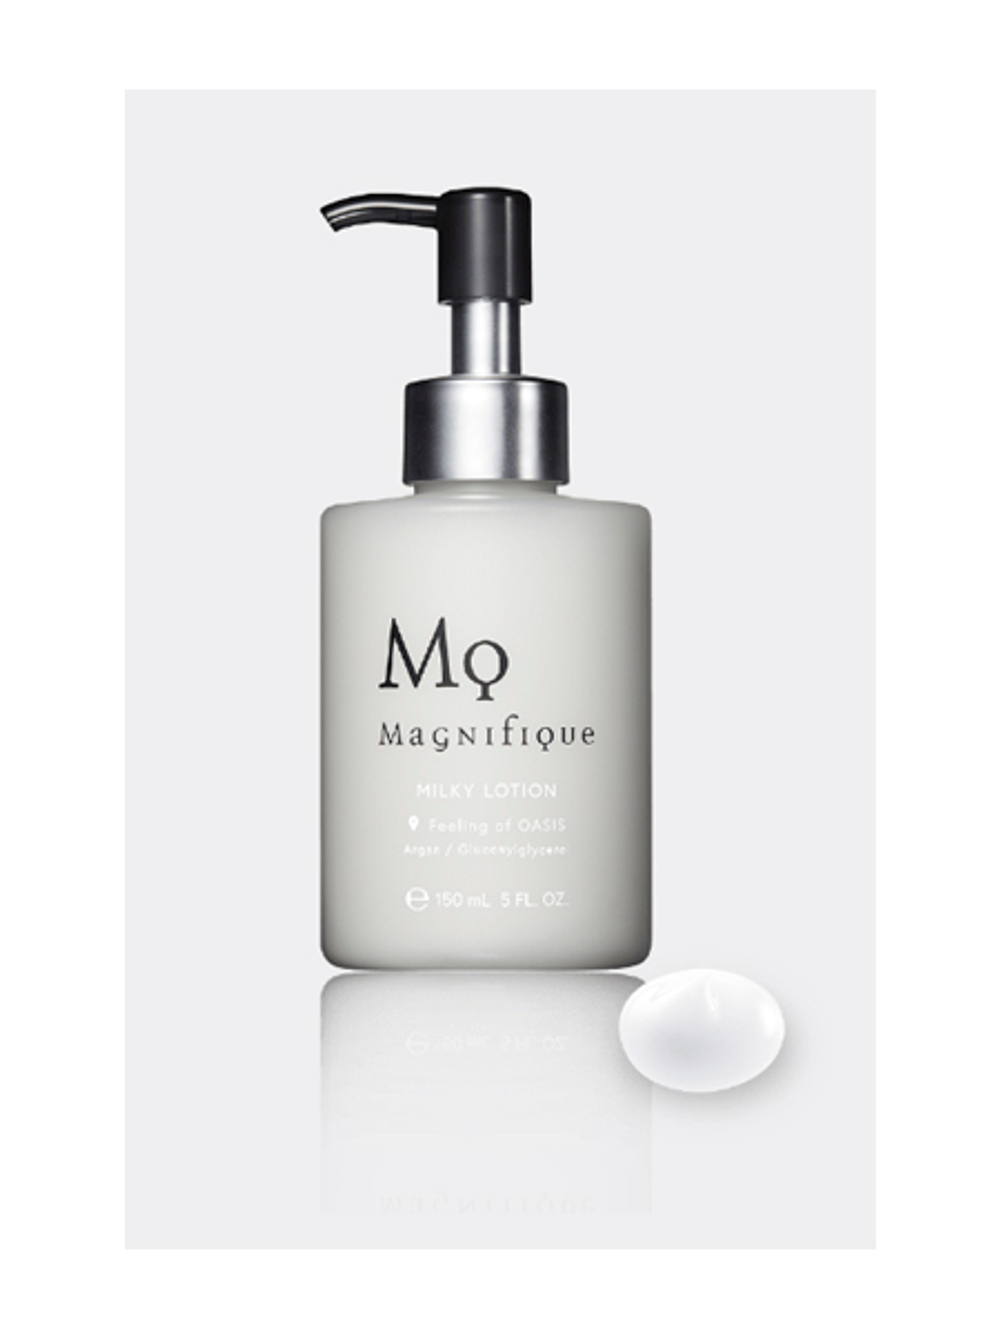 Набор для мужчин: Очищающий крем для бритья/умывания, увлажняющая эмульсия и лосьон Mq Magnifque